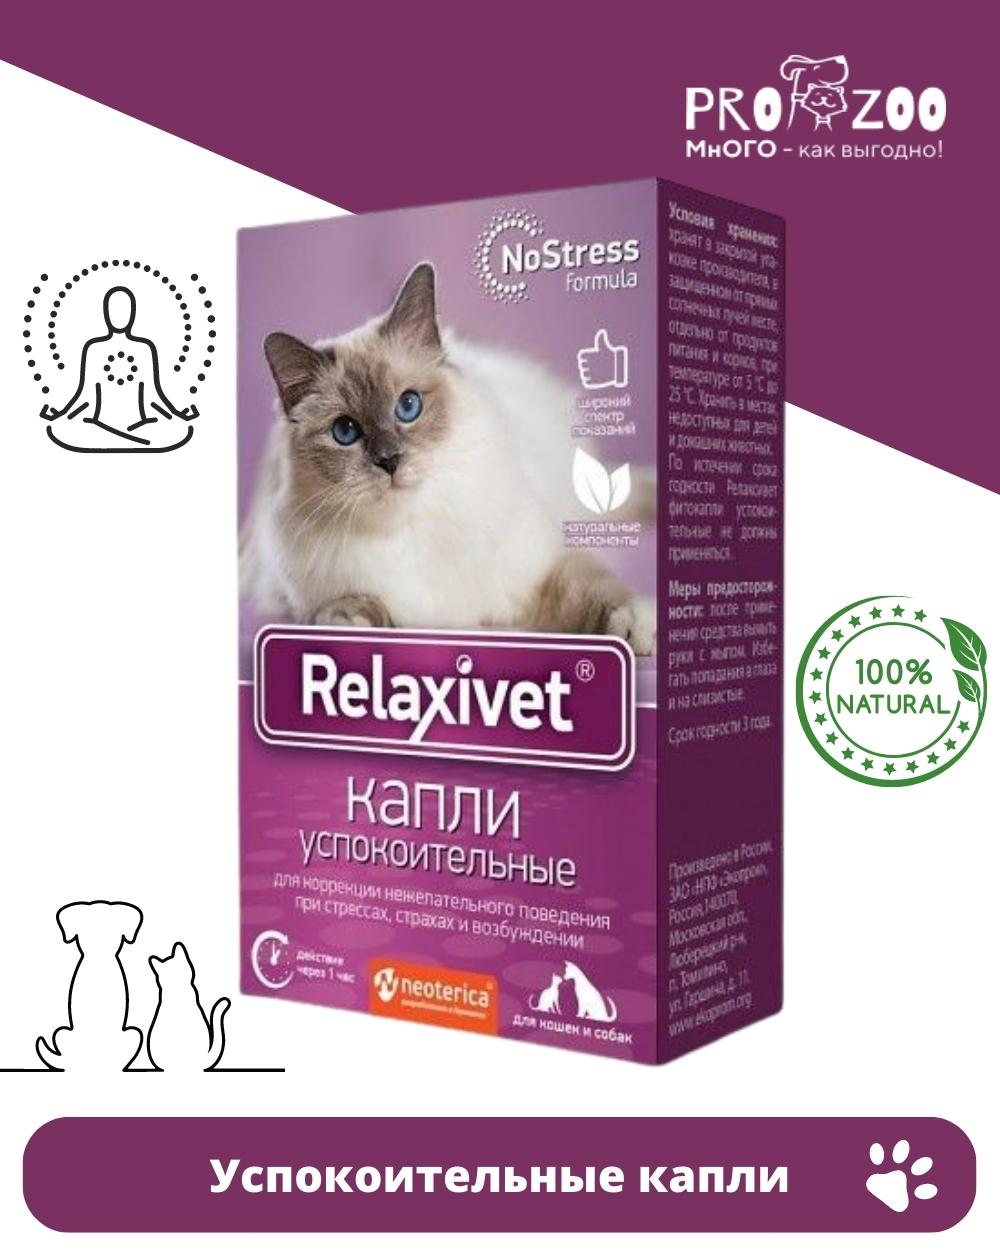 Релаксивет фитокапли успокоительные x103. Таблетки успокоительные Relaxivet x108 для кошек и собак, 10шт. Релаксивет для кошек цена. Relaxivet капли успокоительные